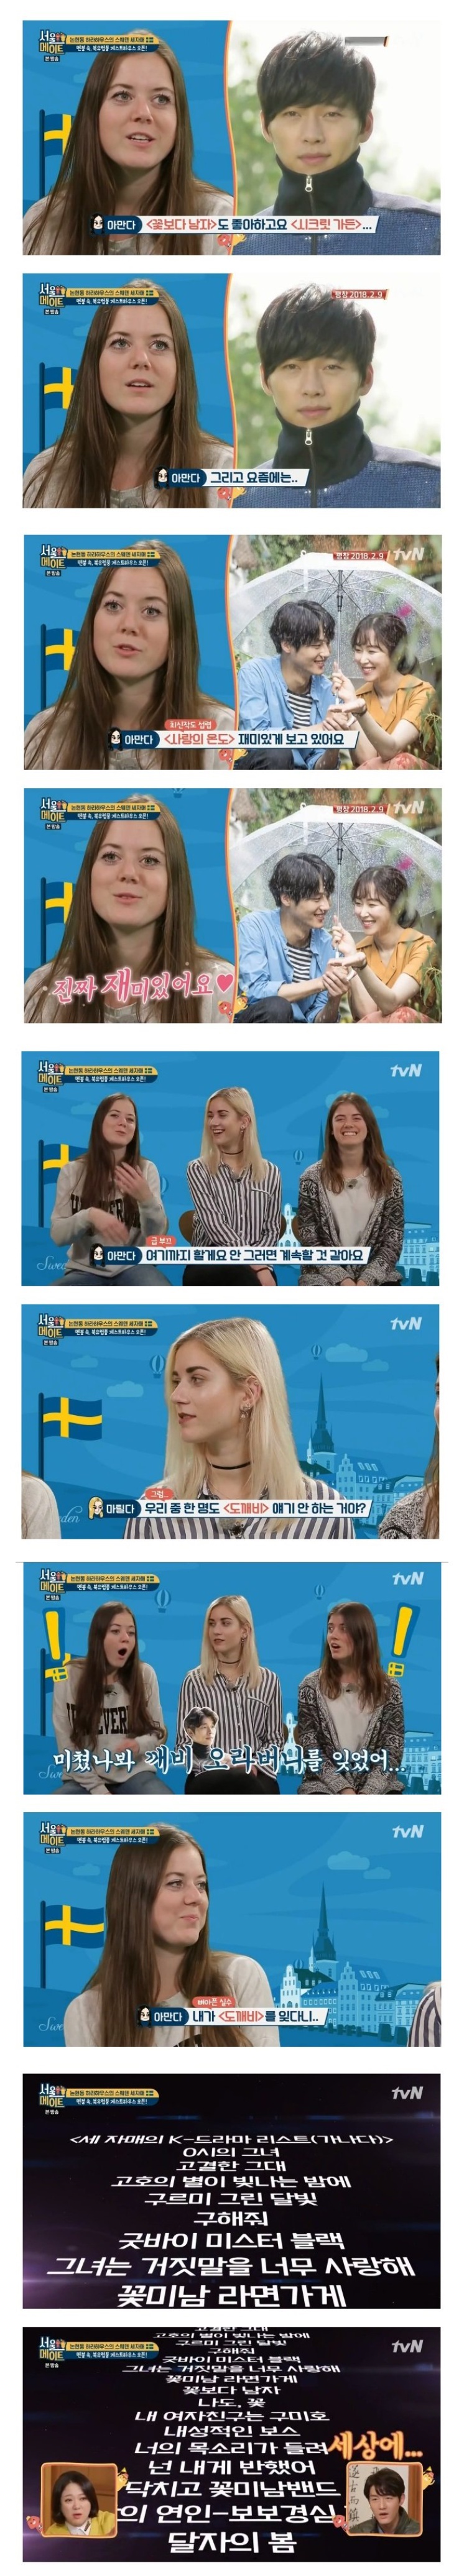 스웨덴 세자매가 섭렵한 한국 드라마 내역